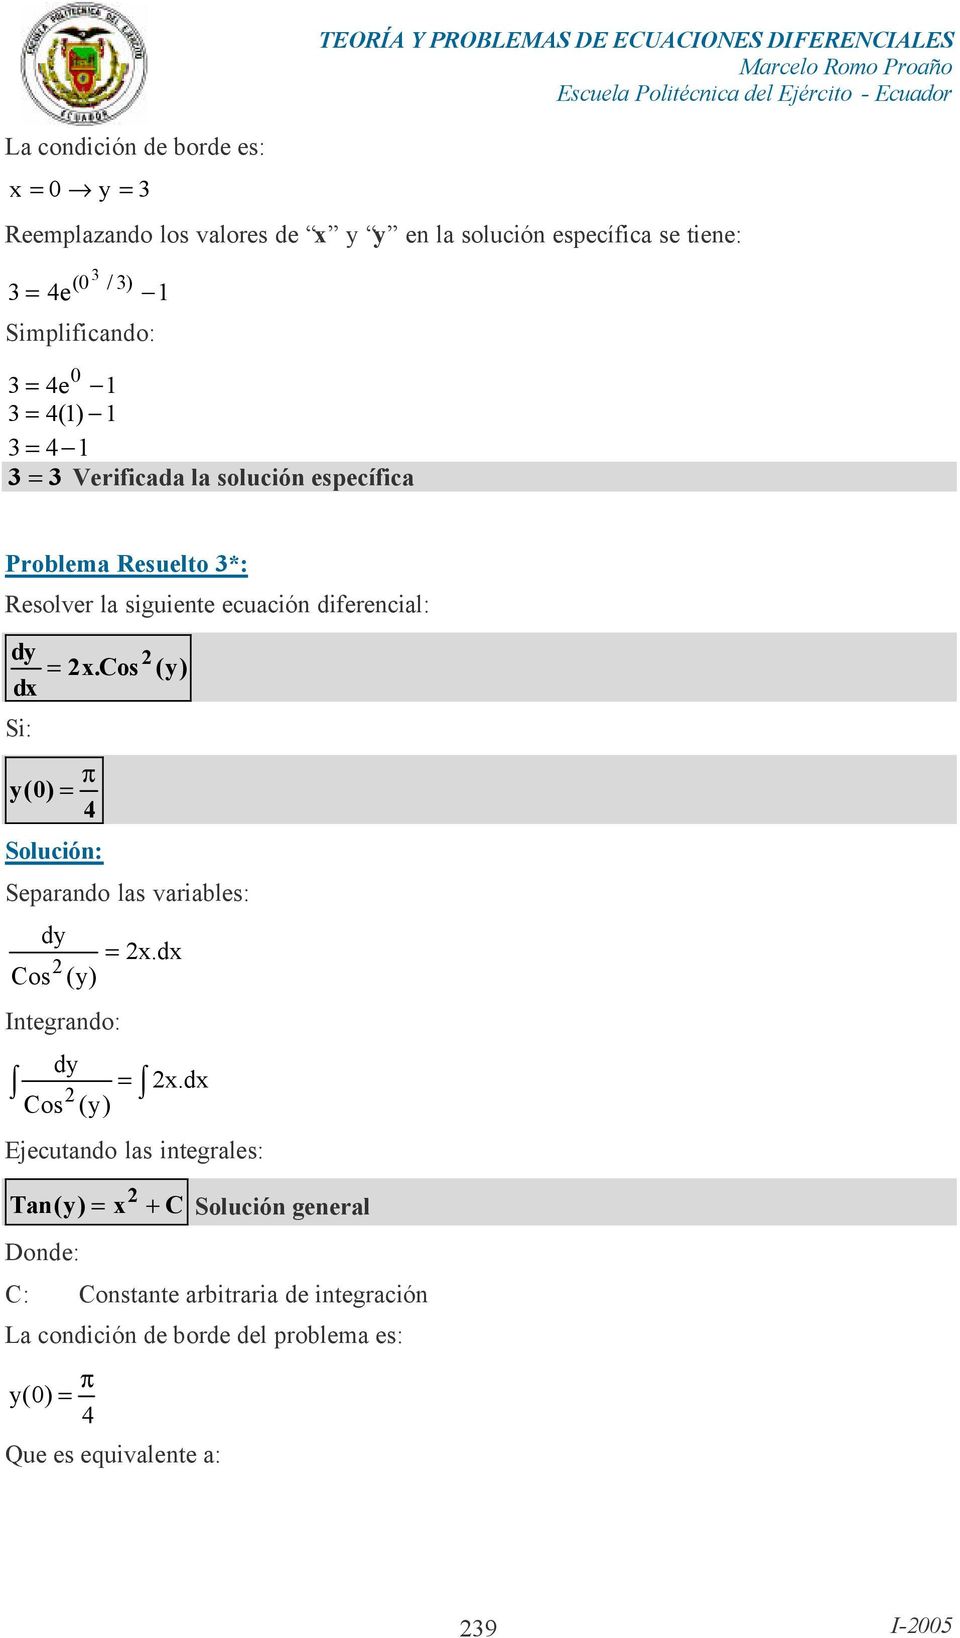 Rsolvr la siguint cuación difrncial: d = x.cos () Si: p (0) = Solución: Sparando las variabls: d = x. Cos () Intgrando: d Cos () = x.